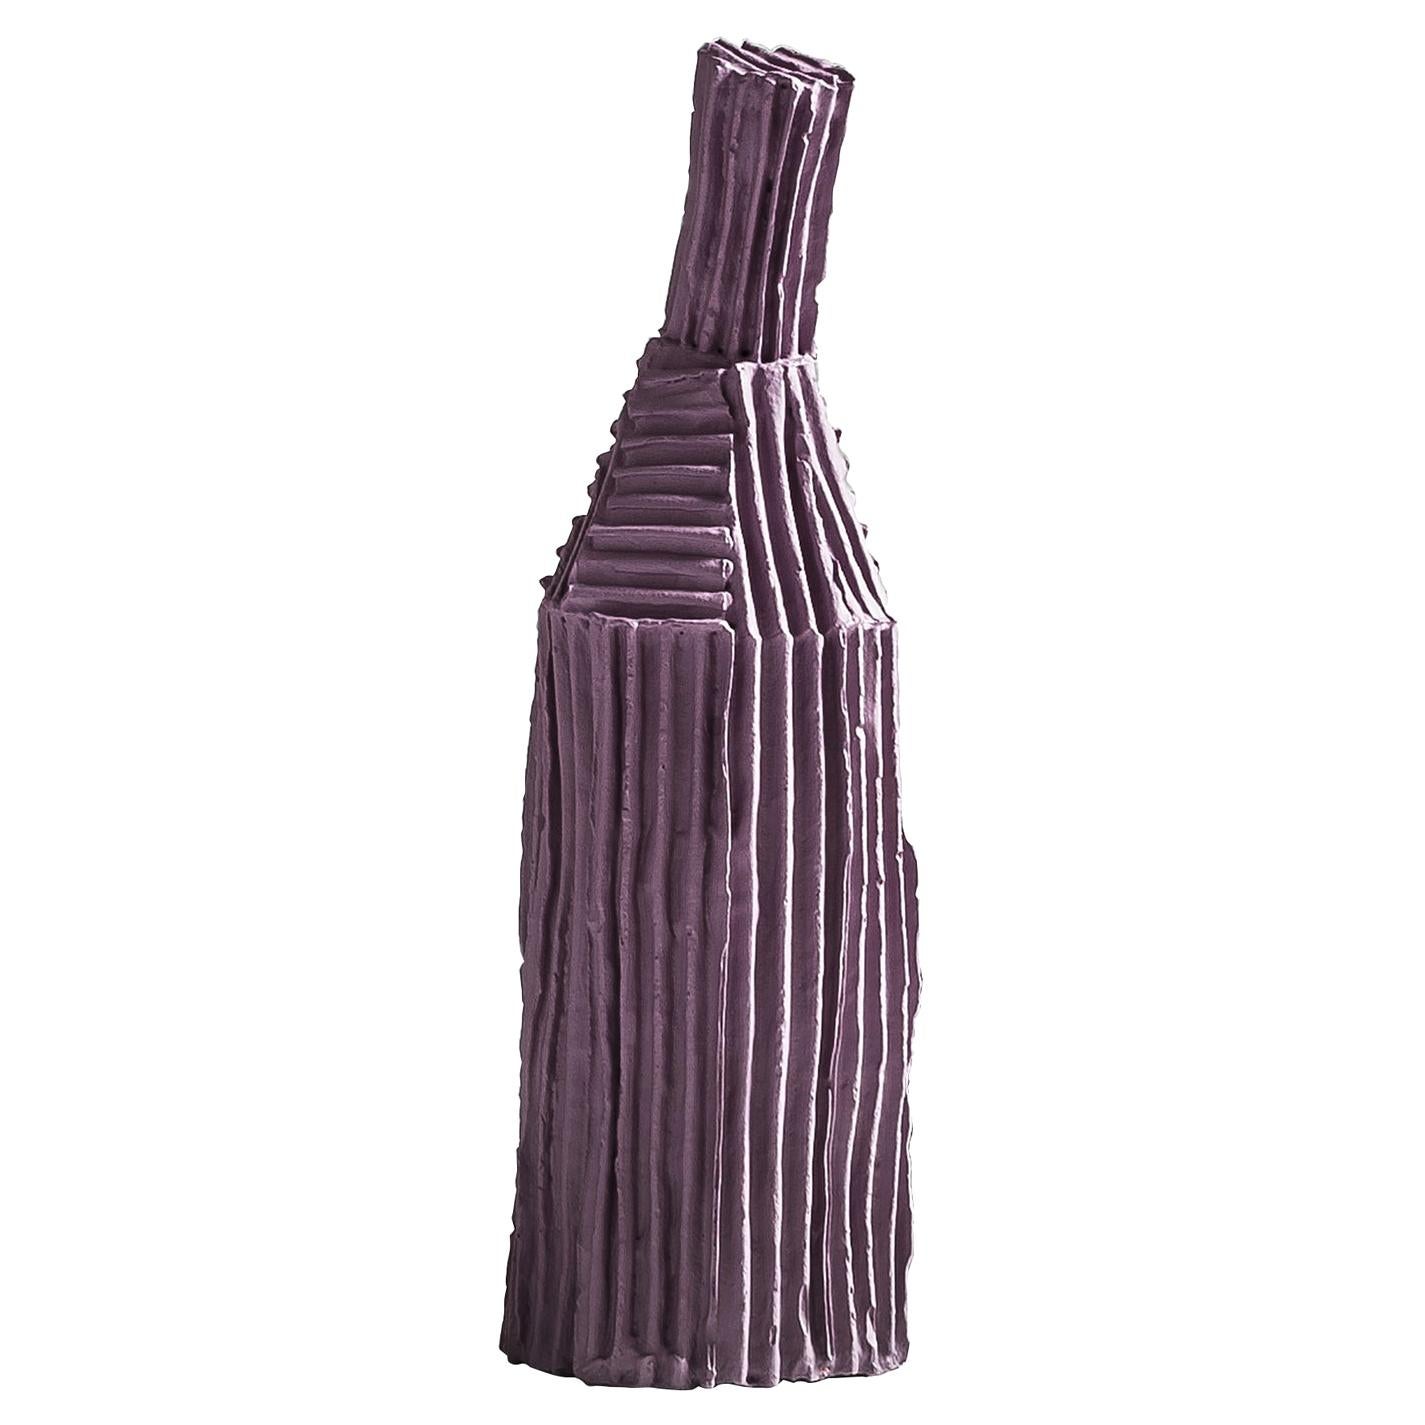 Contemporary Ceramic Cartocci Lilac Dekorative Flasche Corteccia Textur